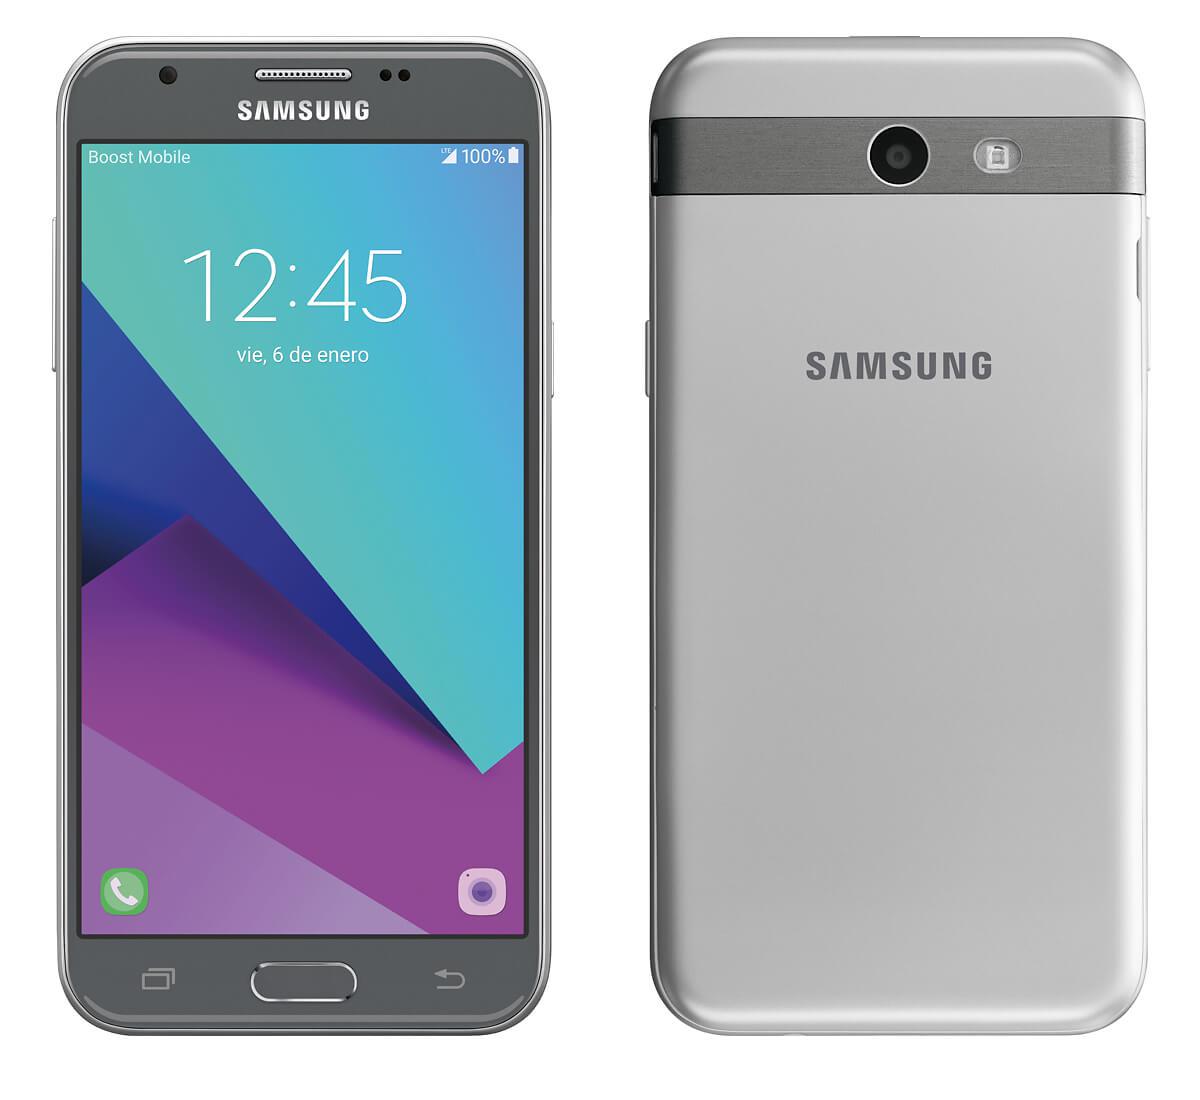 روم عربي تركي فارسي للهاتف Samsung Galaxy J3 Emerge SM-J327P إصدار 6.0.1 الحماية U4